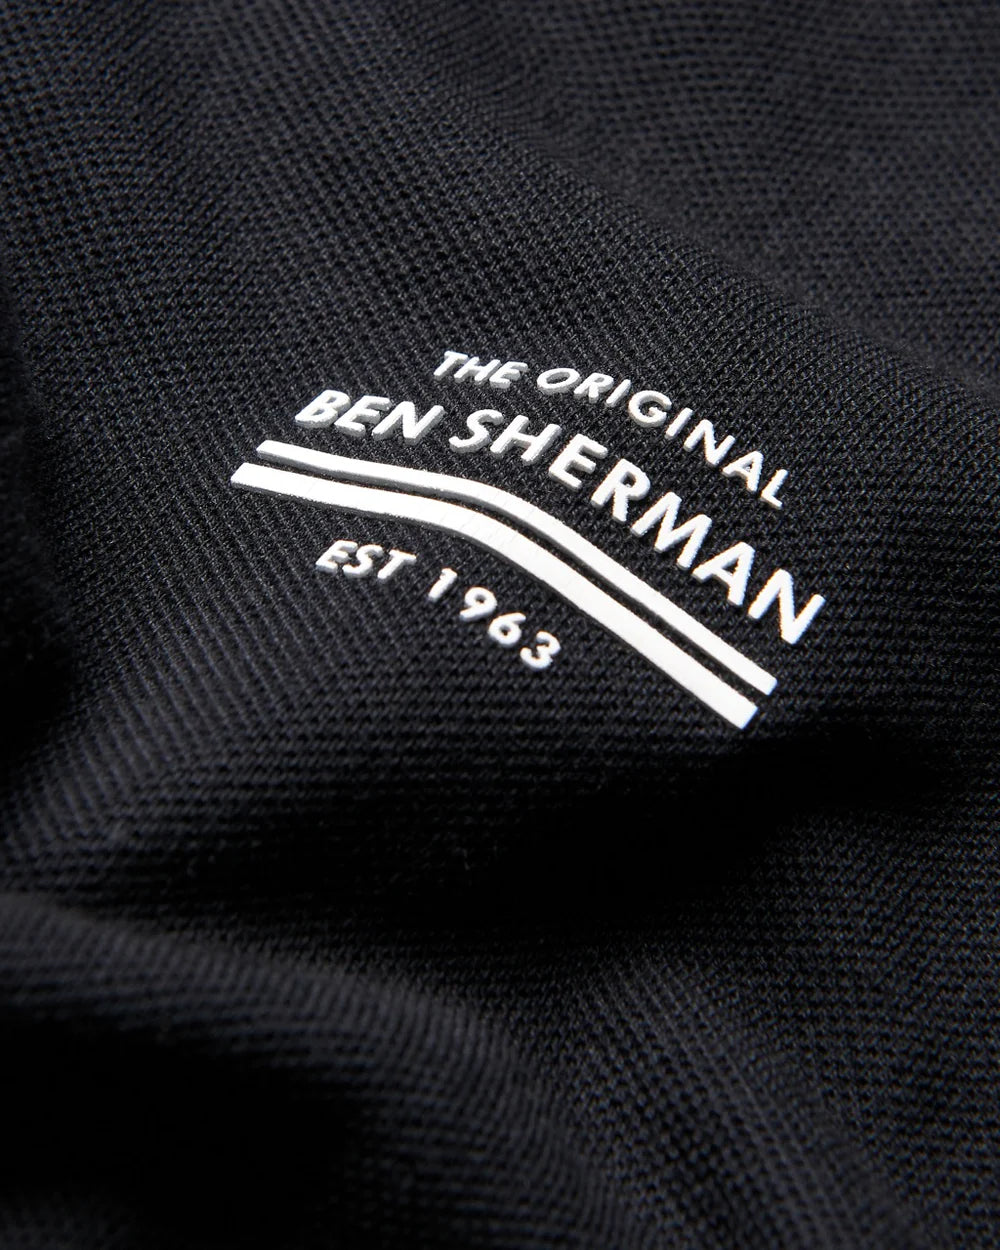 Ben Sherman Camiseta Pique Black